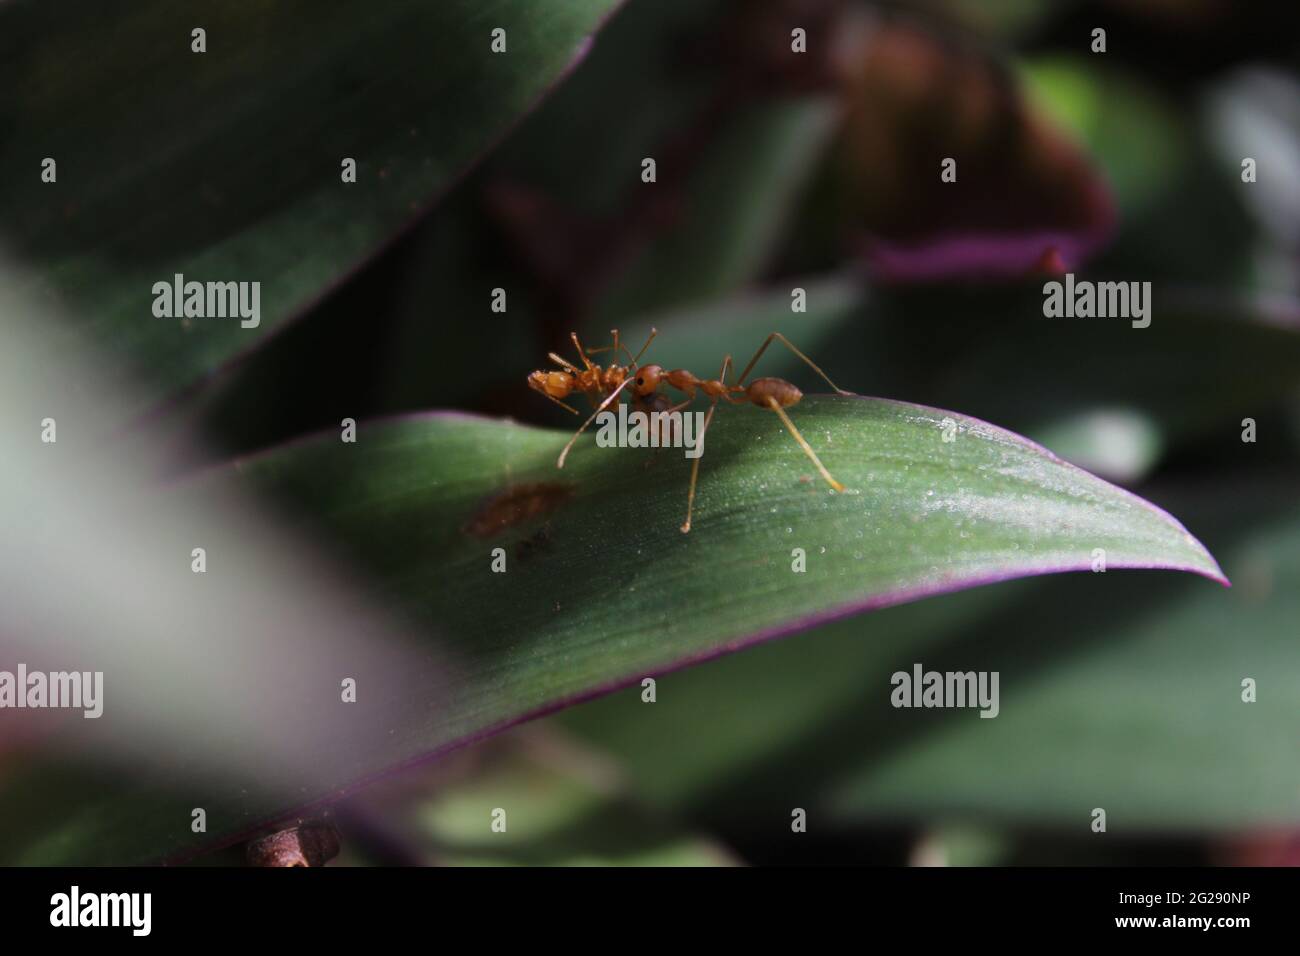 Ameisen-Teamarbeit. Ameise trägt eine weitere tote Ameise. Freundschaft zwischen Ameisen. Teamarbeit und Freundschaft. Insekten helfen sich gegenseitig Stockfoto